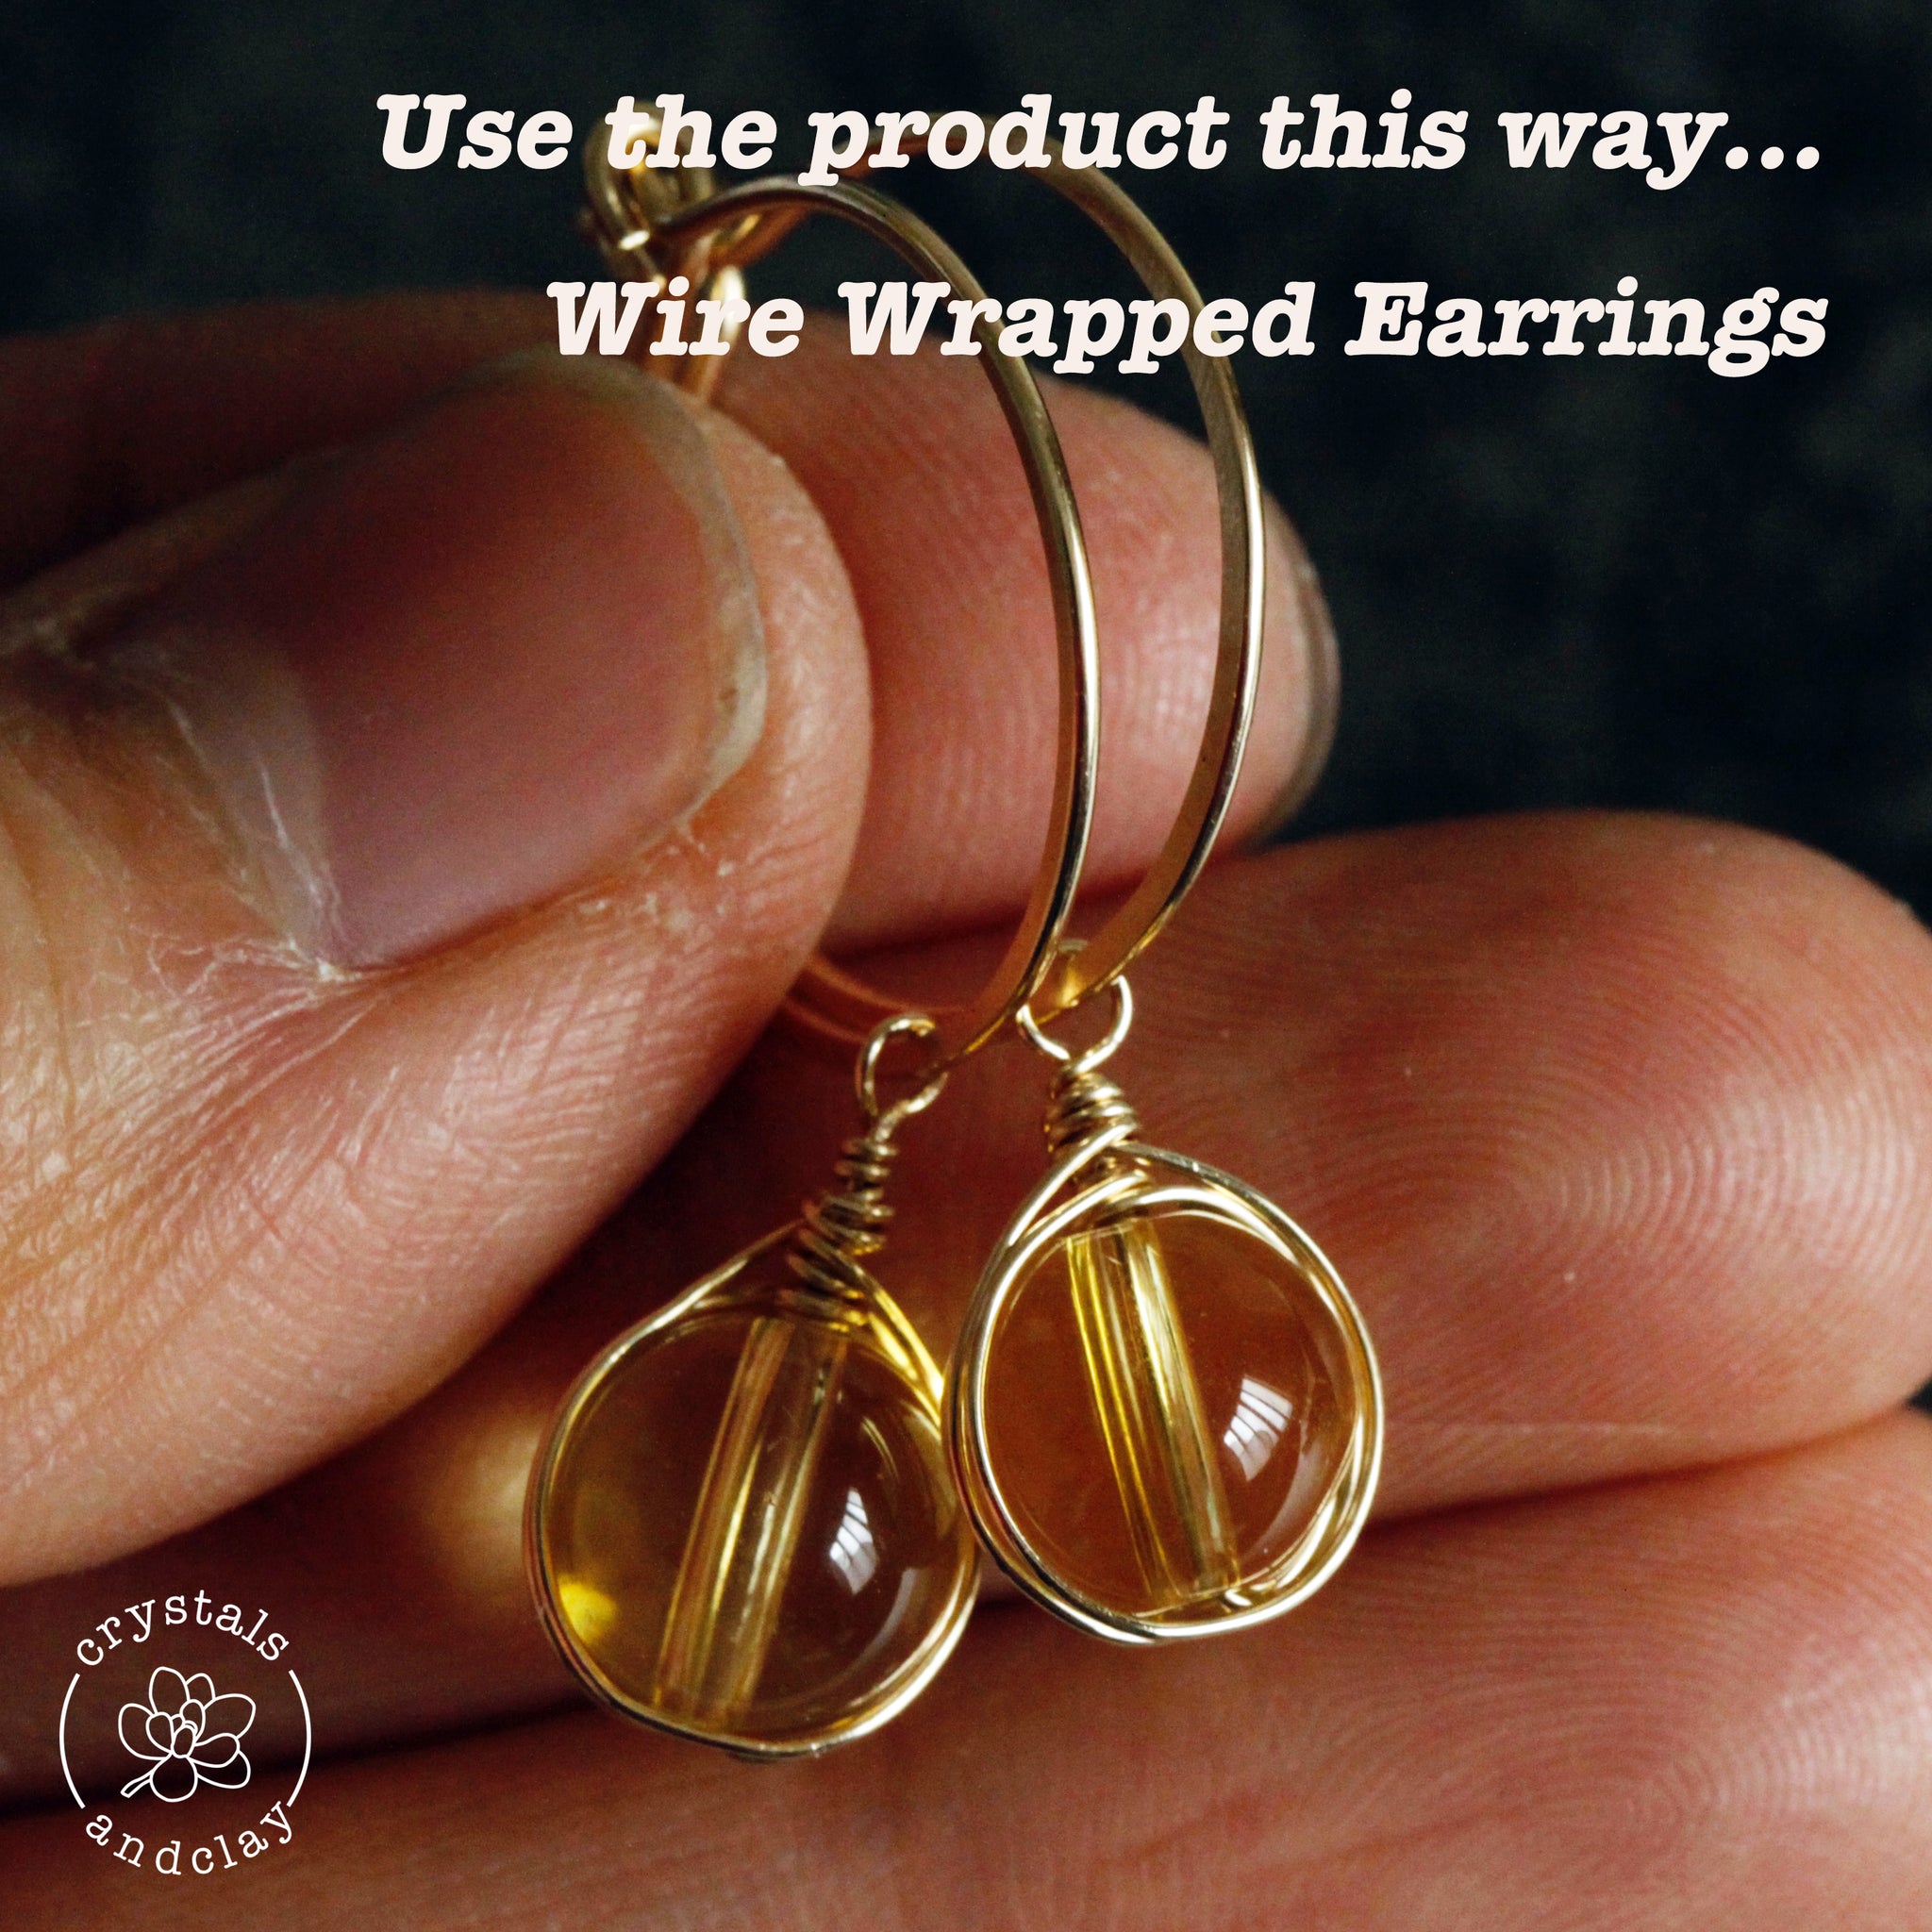 21 Gauge Round Half Hard 14/20 Gold Filled Wire: Wire Jewelry, Wire Wrap  Tutorials